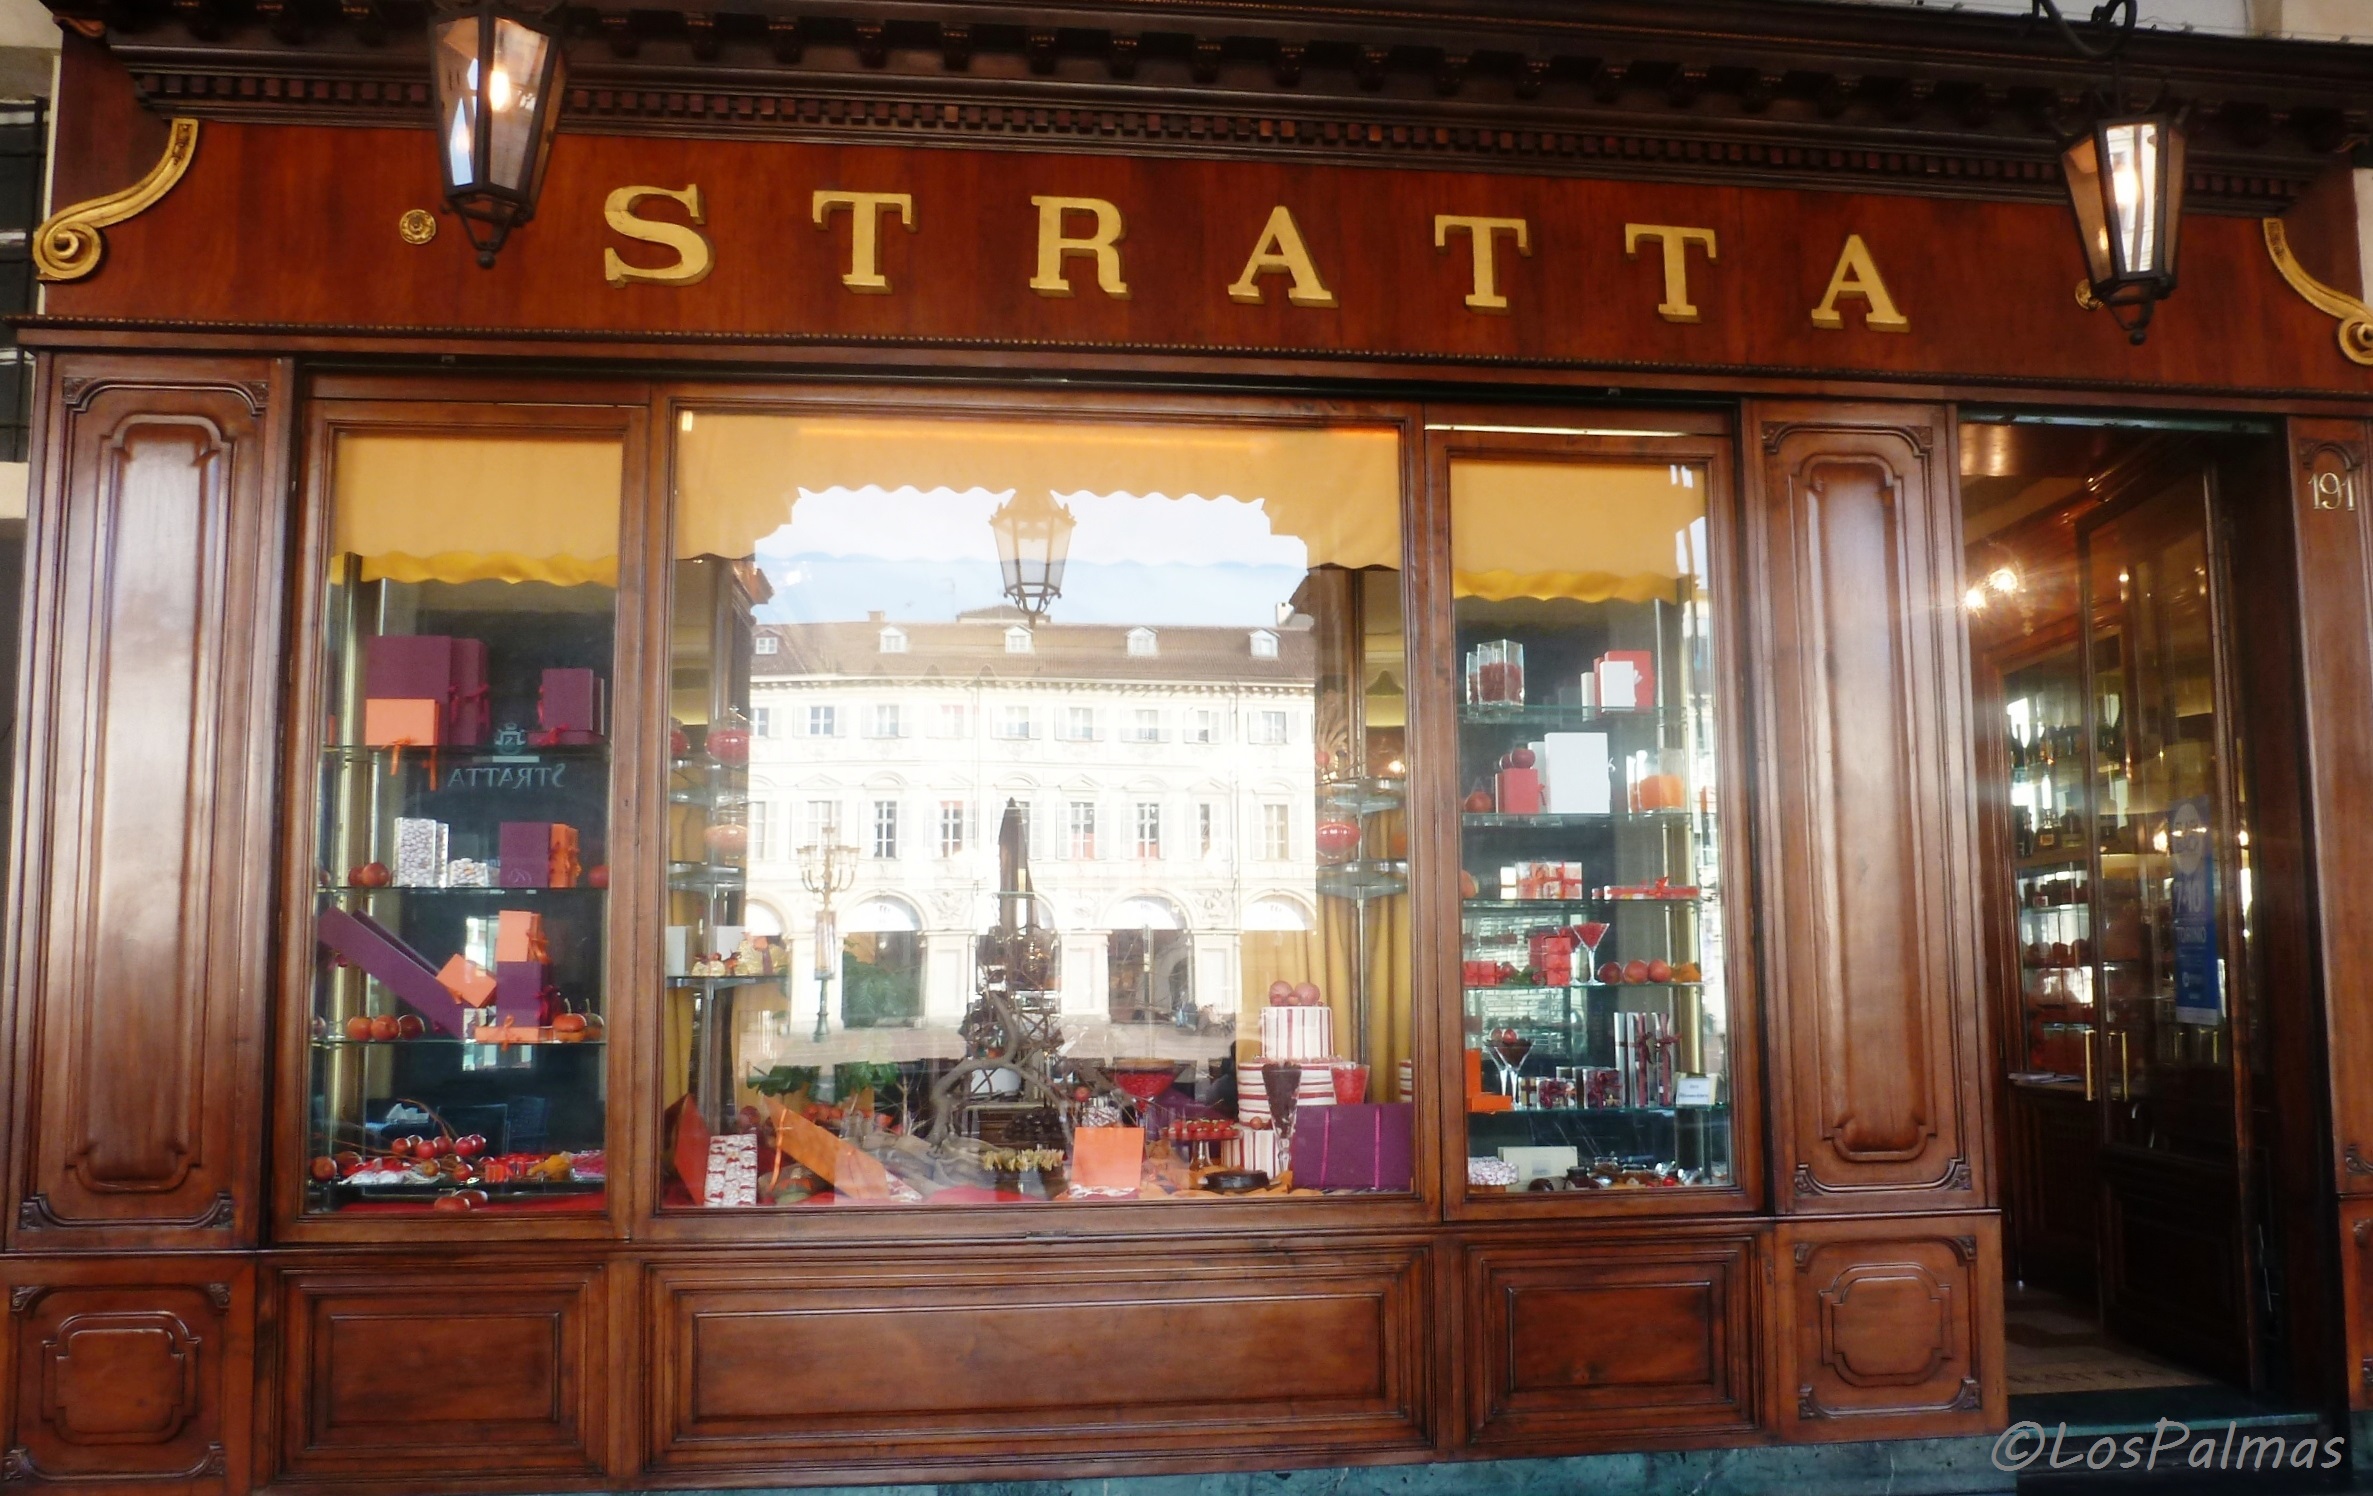 En Piazza San Carlo, otro café, Stratta turin gastronomica torino gastronomy